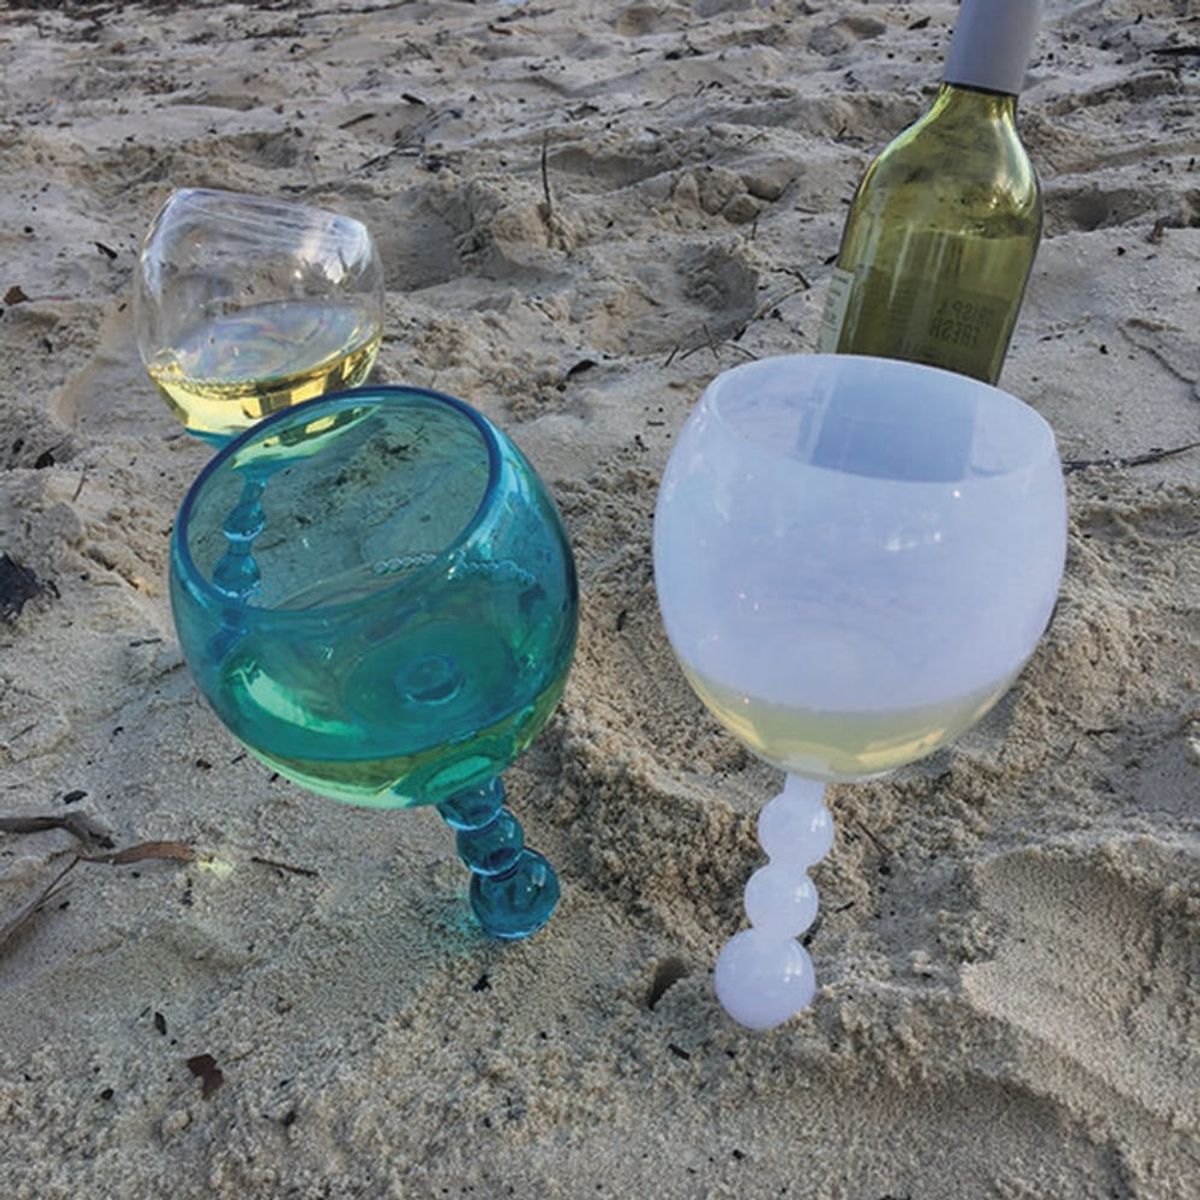 Aldi’s Unique Wine Glass Will Revolutionize Your Next Trip to the Beach